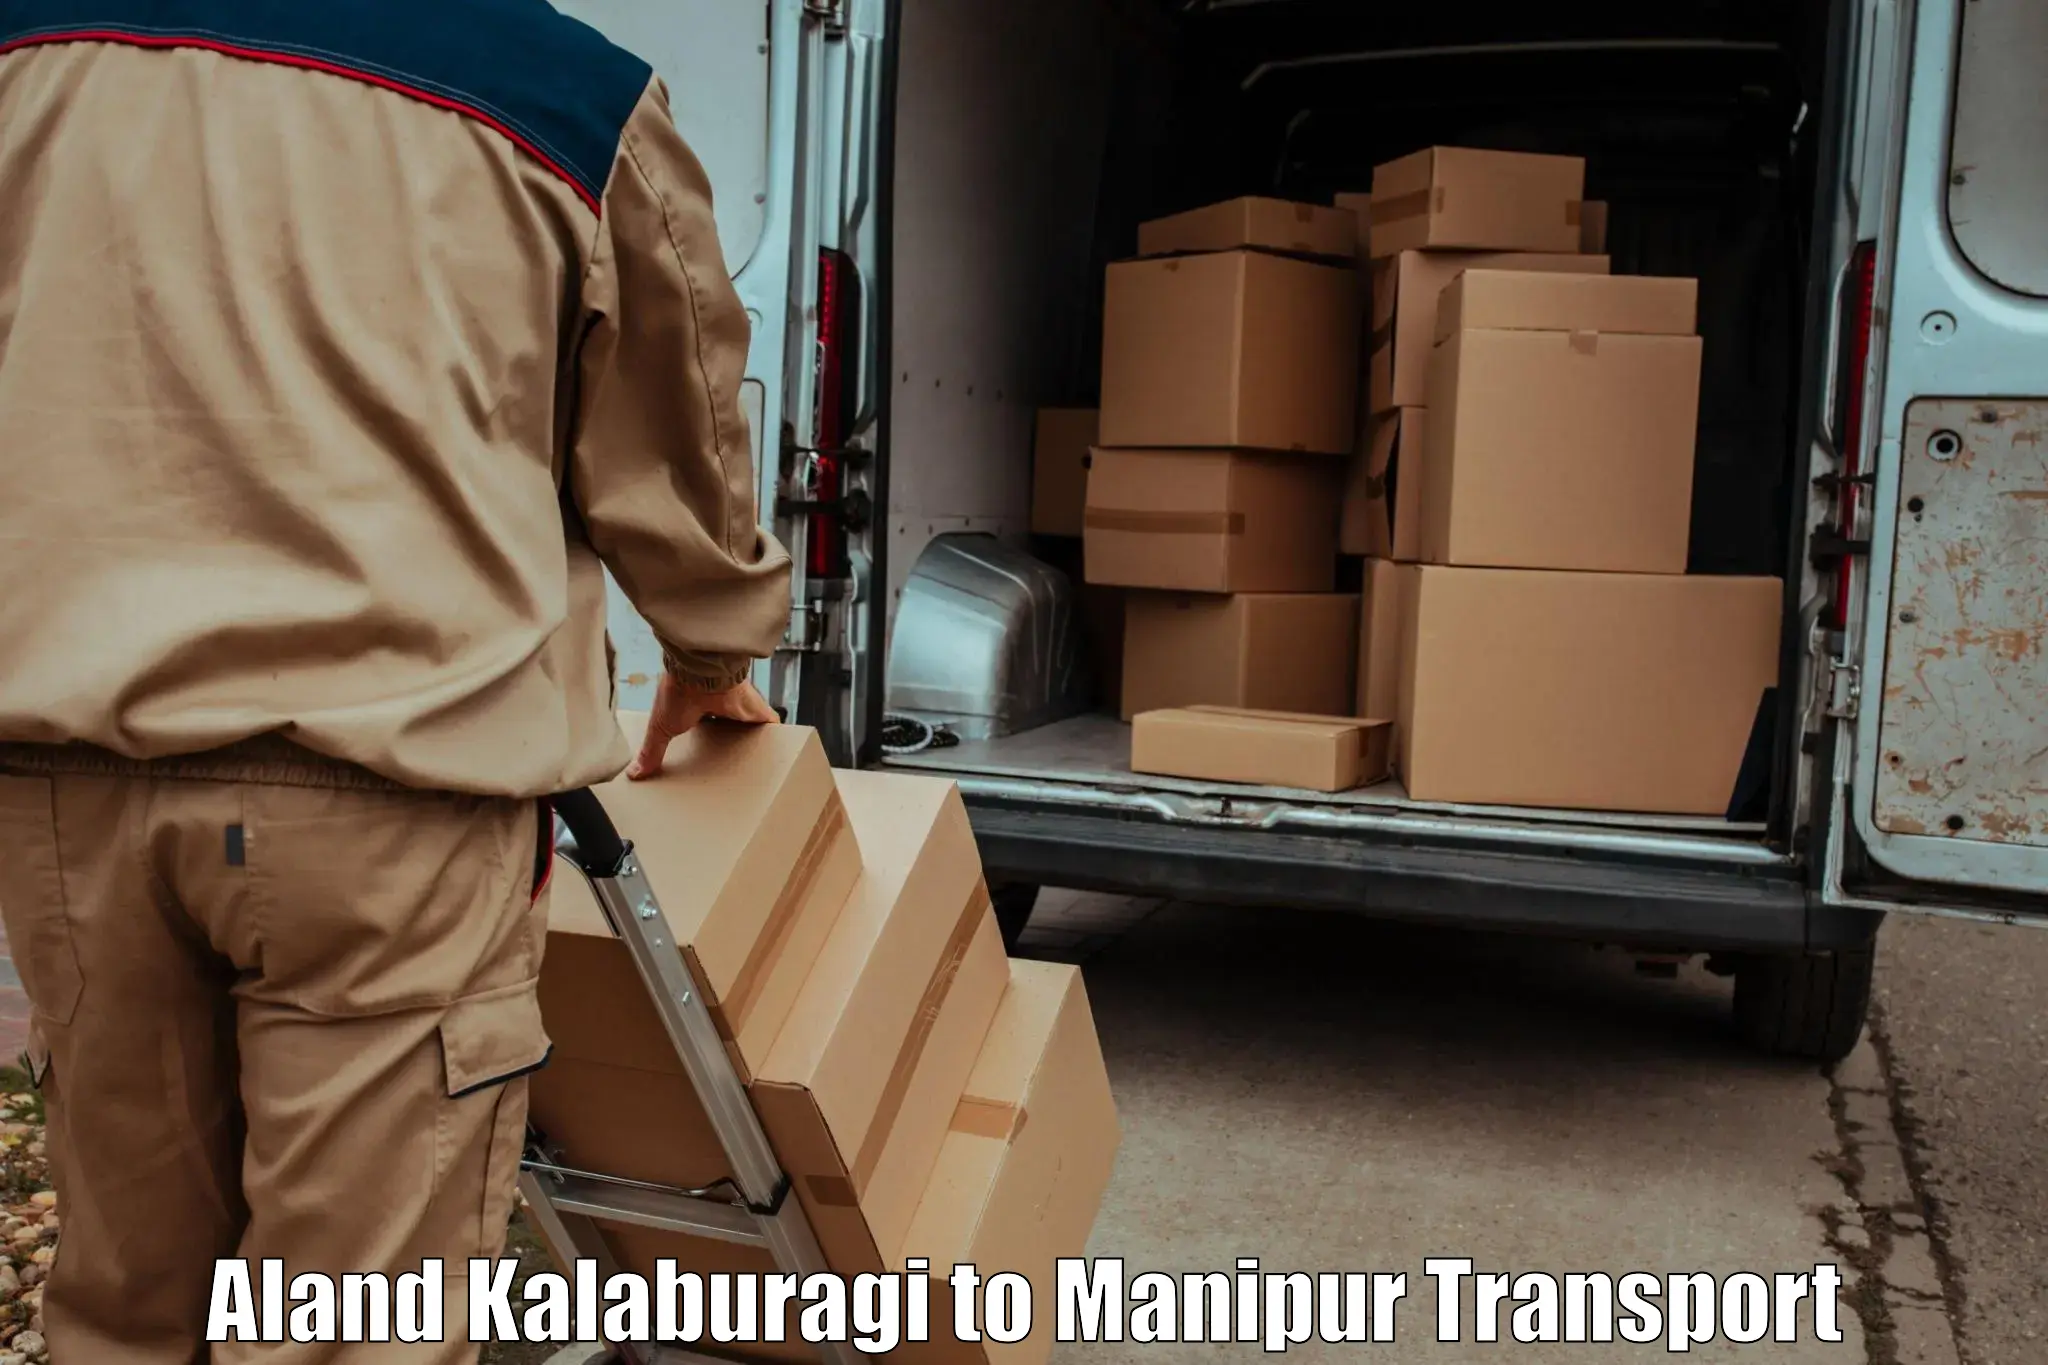 Container transport service Aland Kalaburagi to Thoubal